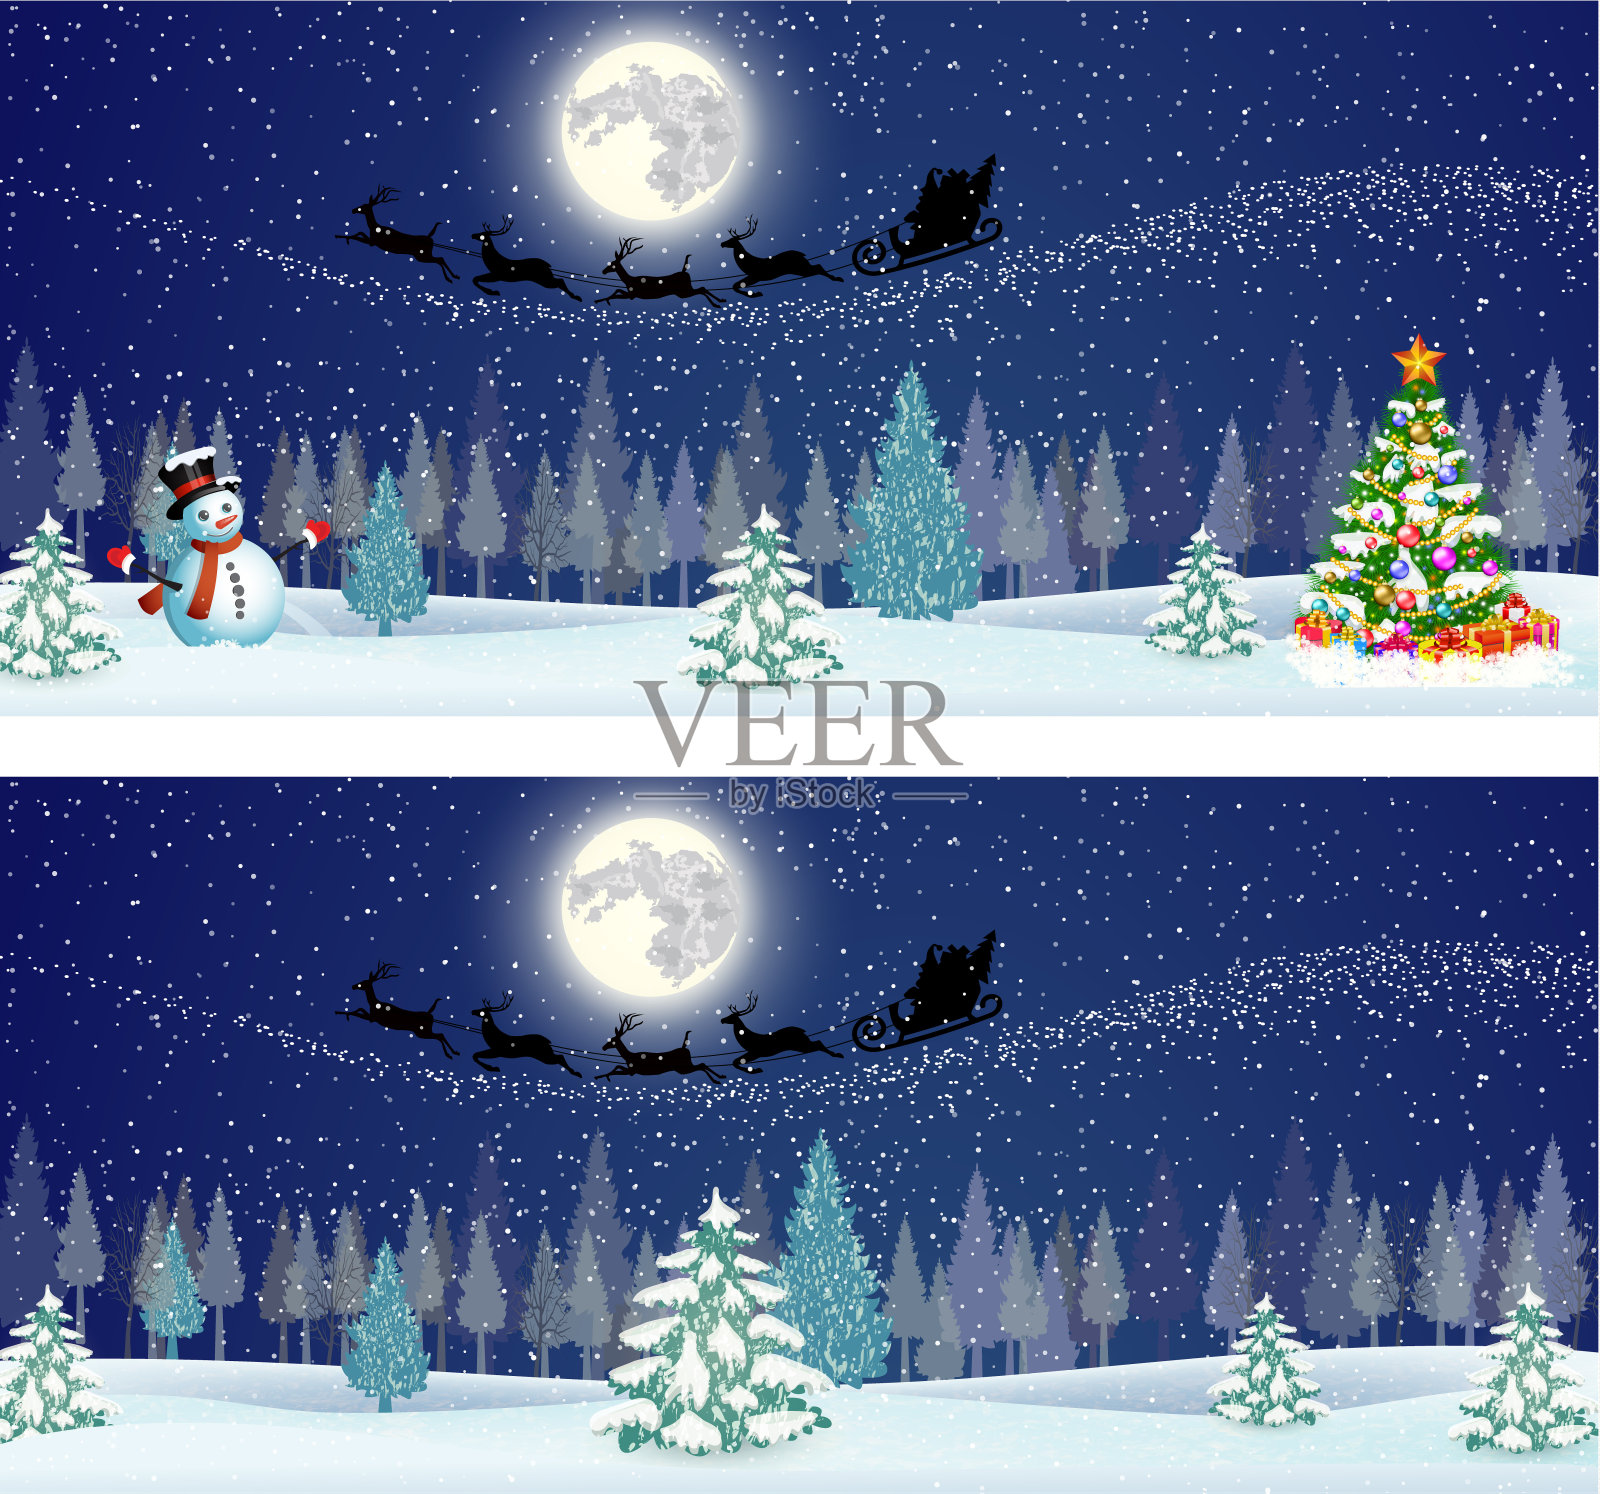 可爱的雪人在夜空的背景插画图片素材